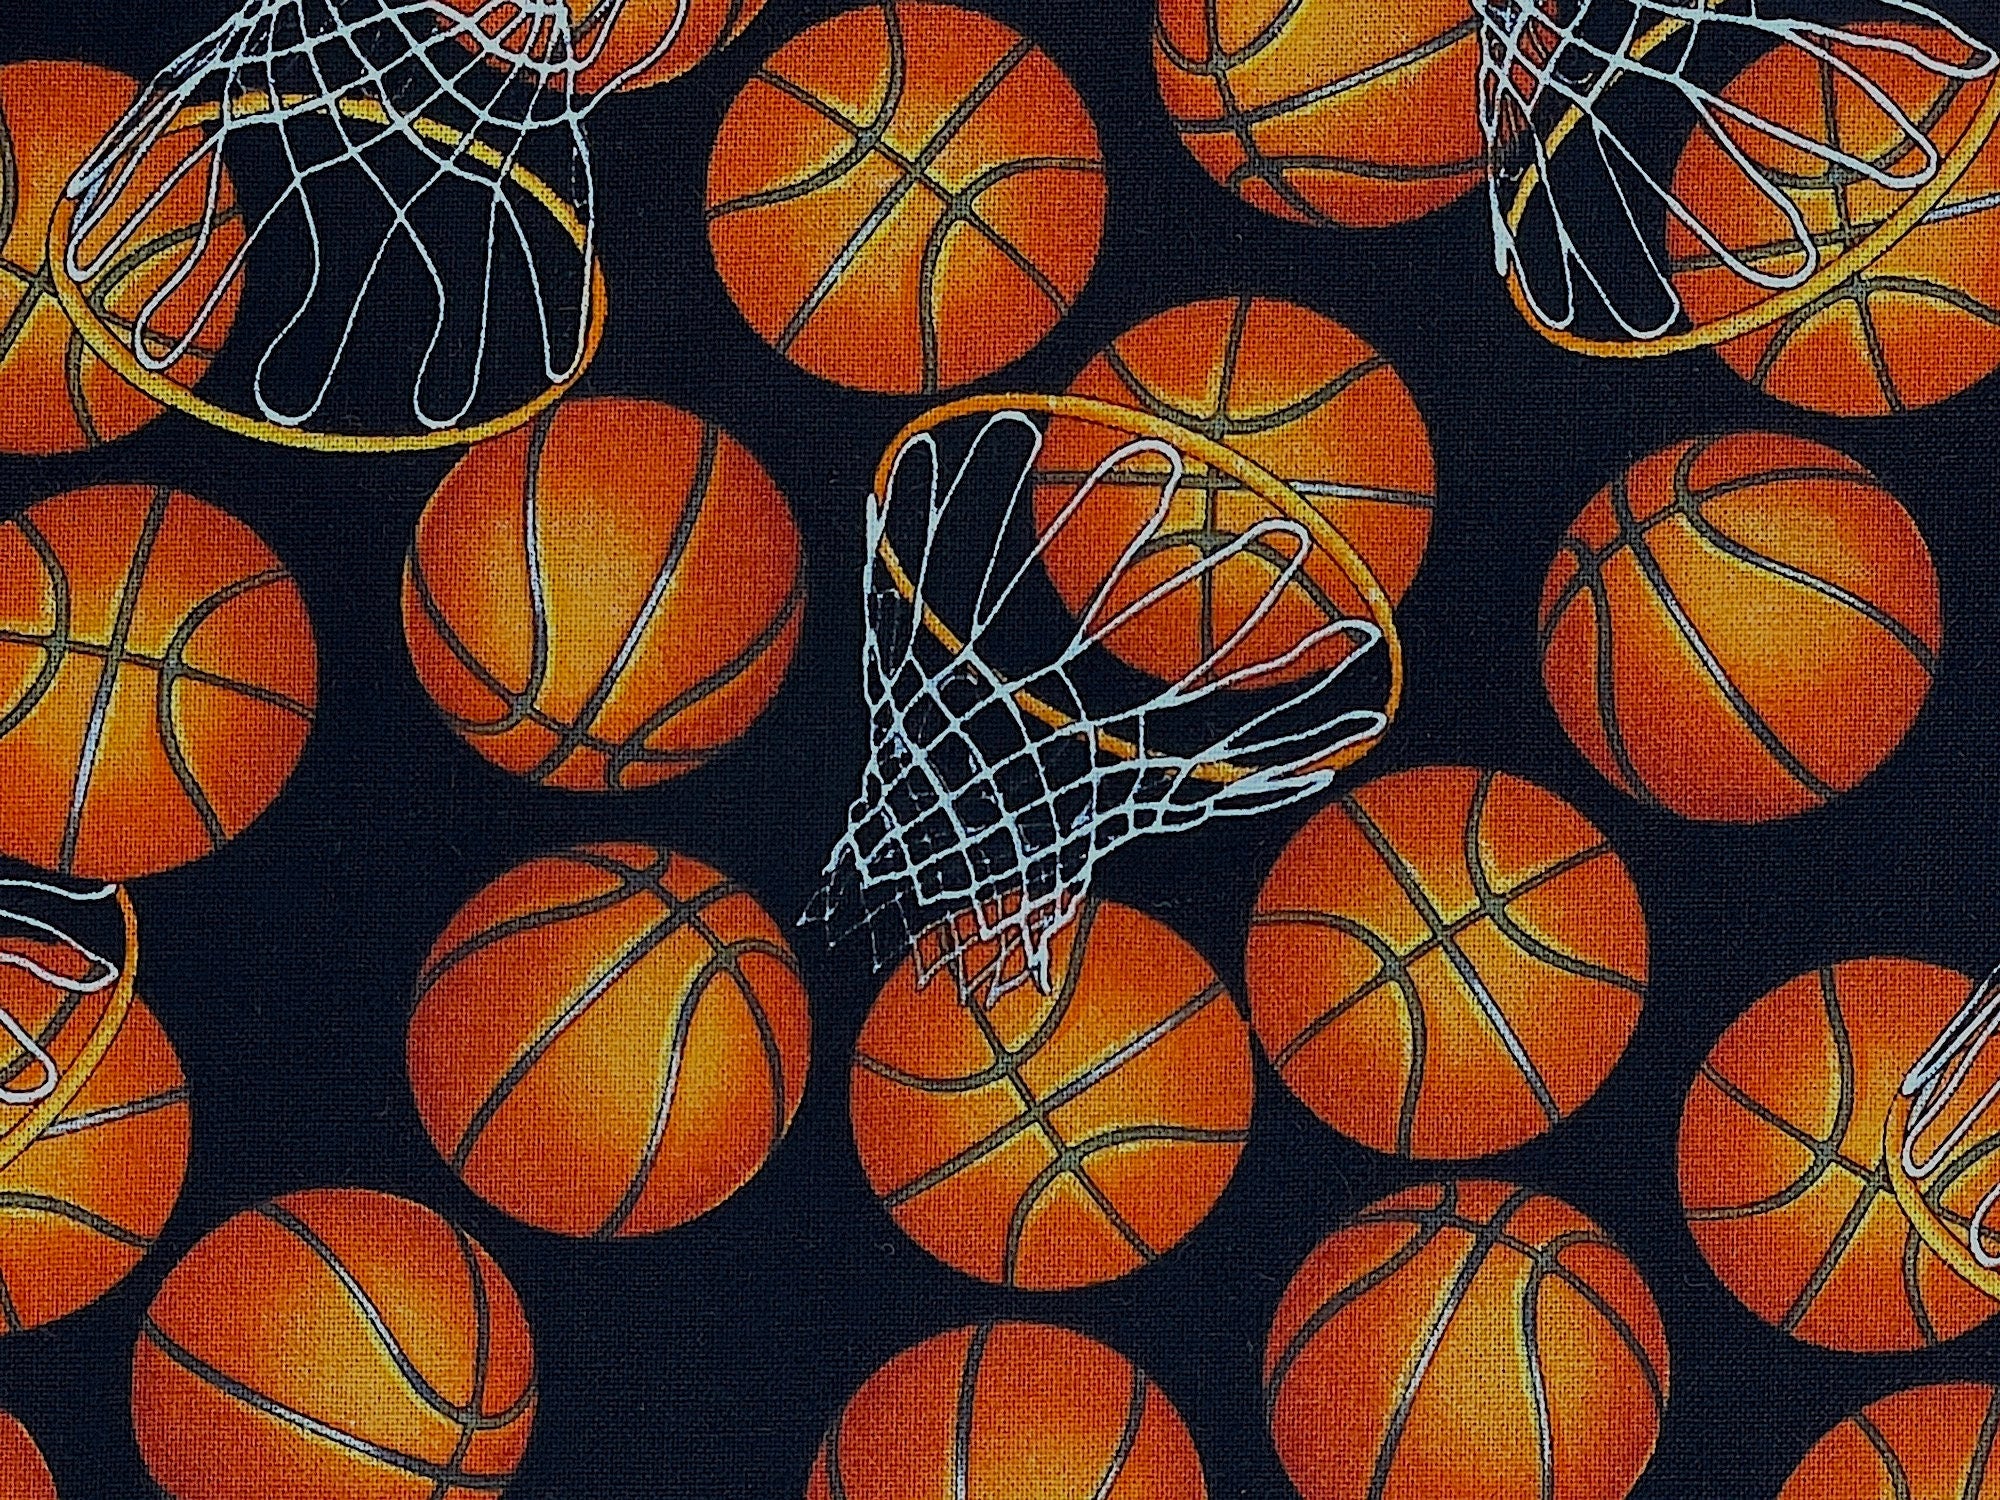 Close up of orange basketballs and basketballs hops on a black background.